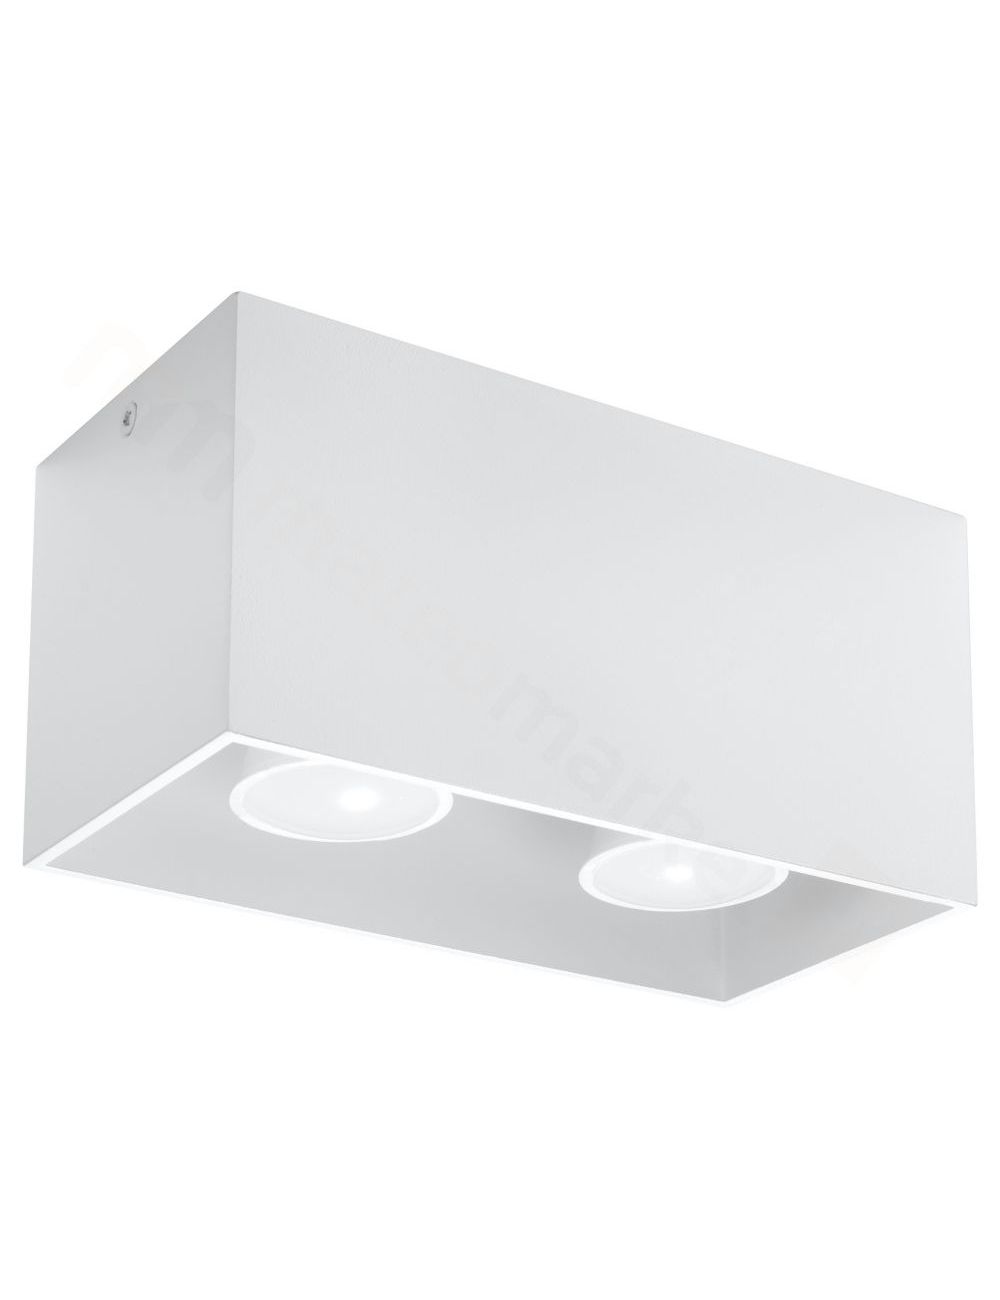 Lampa plafon sufitowy prostokatny metalowy kostka biała Quad Sollux SL.0380